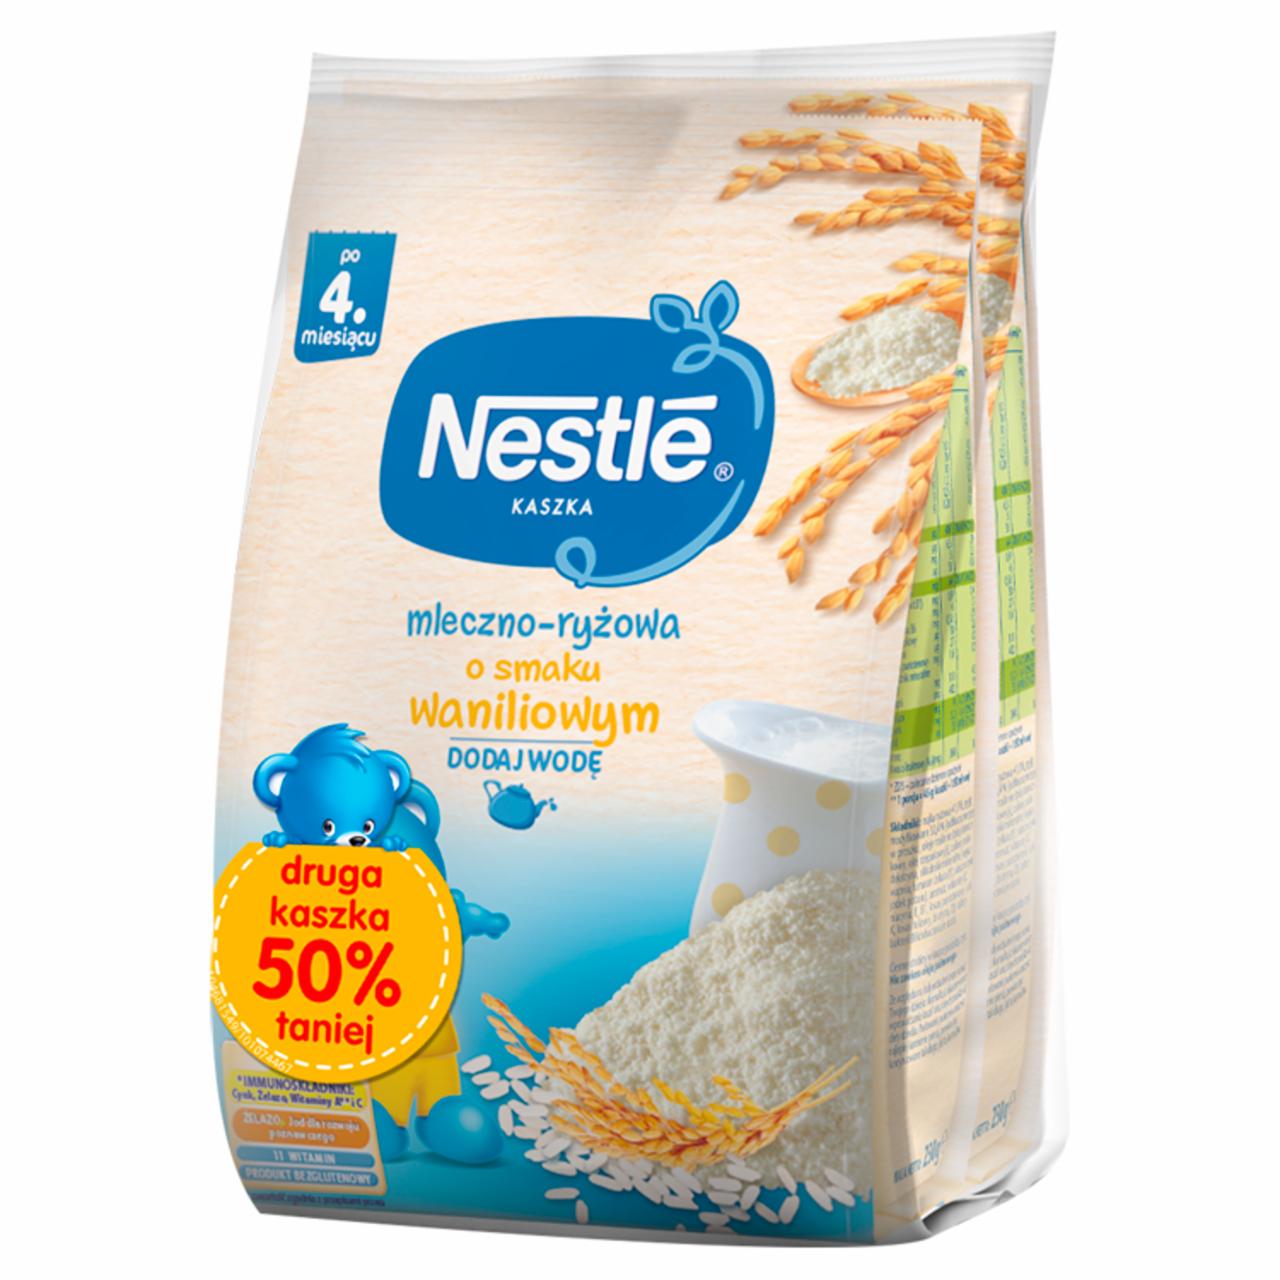 Zdjęcia - Nestlé Kaszka mleczno-ryżowa o smaku waniliowym po 4. miesiącu 460 g (2 x 230 g)